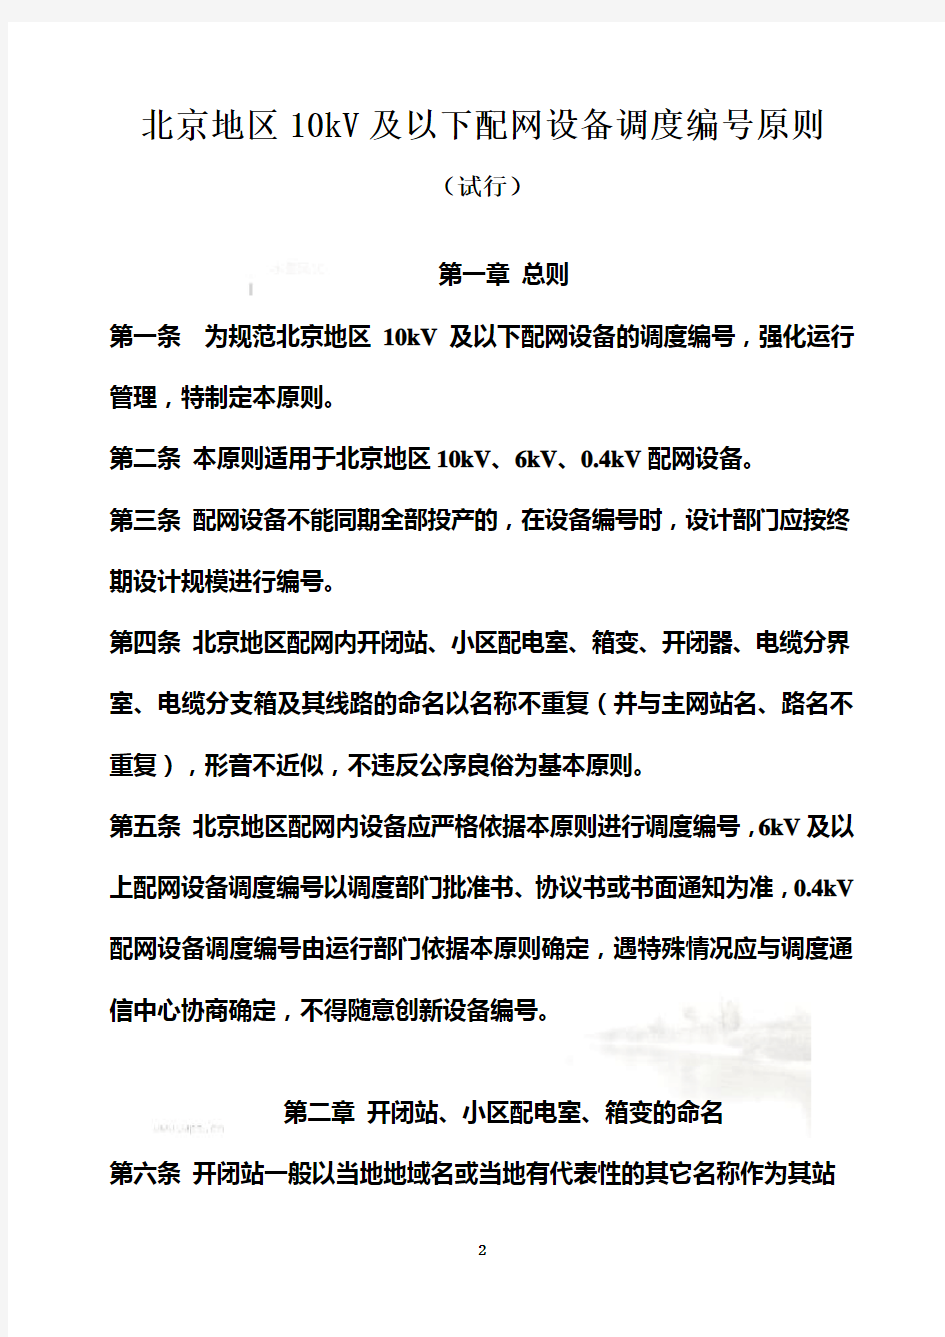 北京电网10kV及以下配网设备调度编号原则(试行)